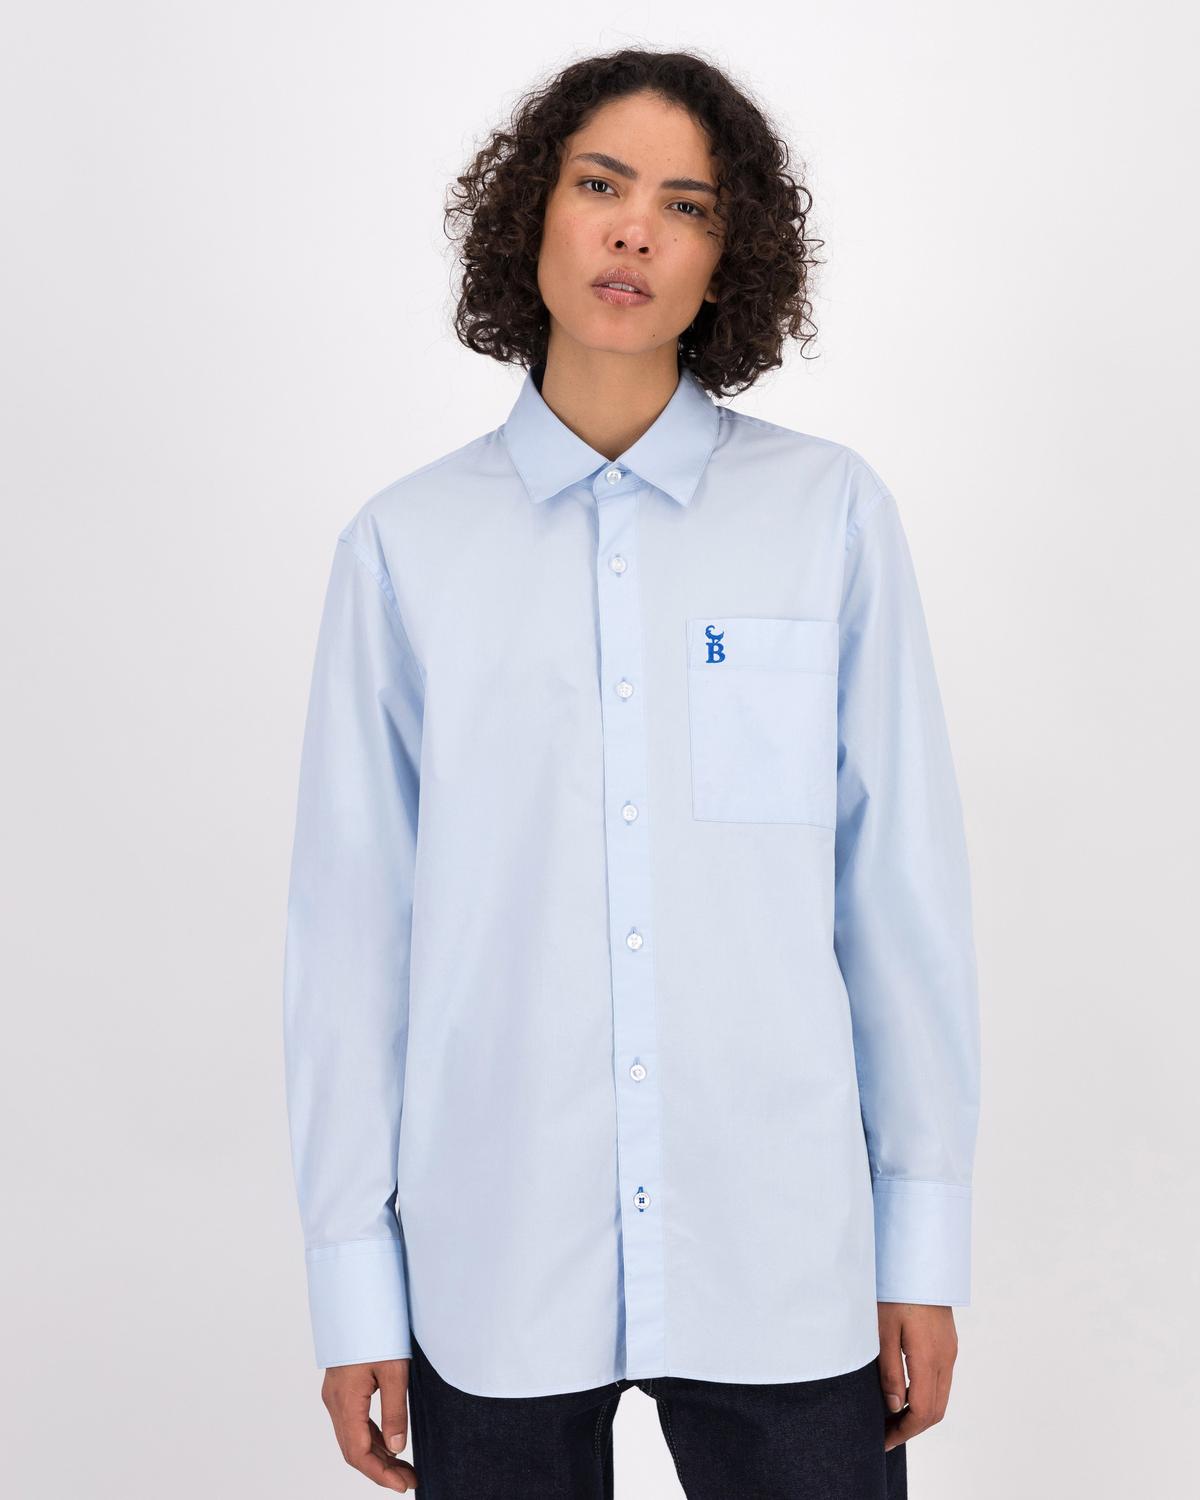 BROKE x Old Khaki Unisex Blue Shirt | Old Khaki